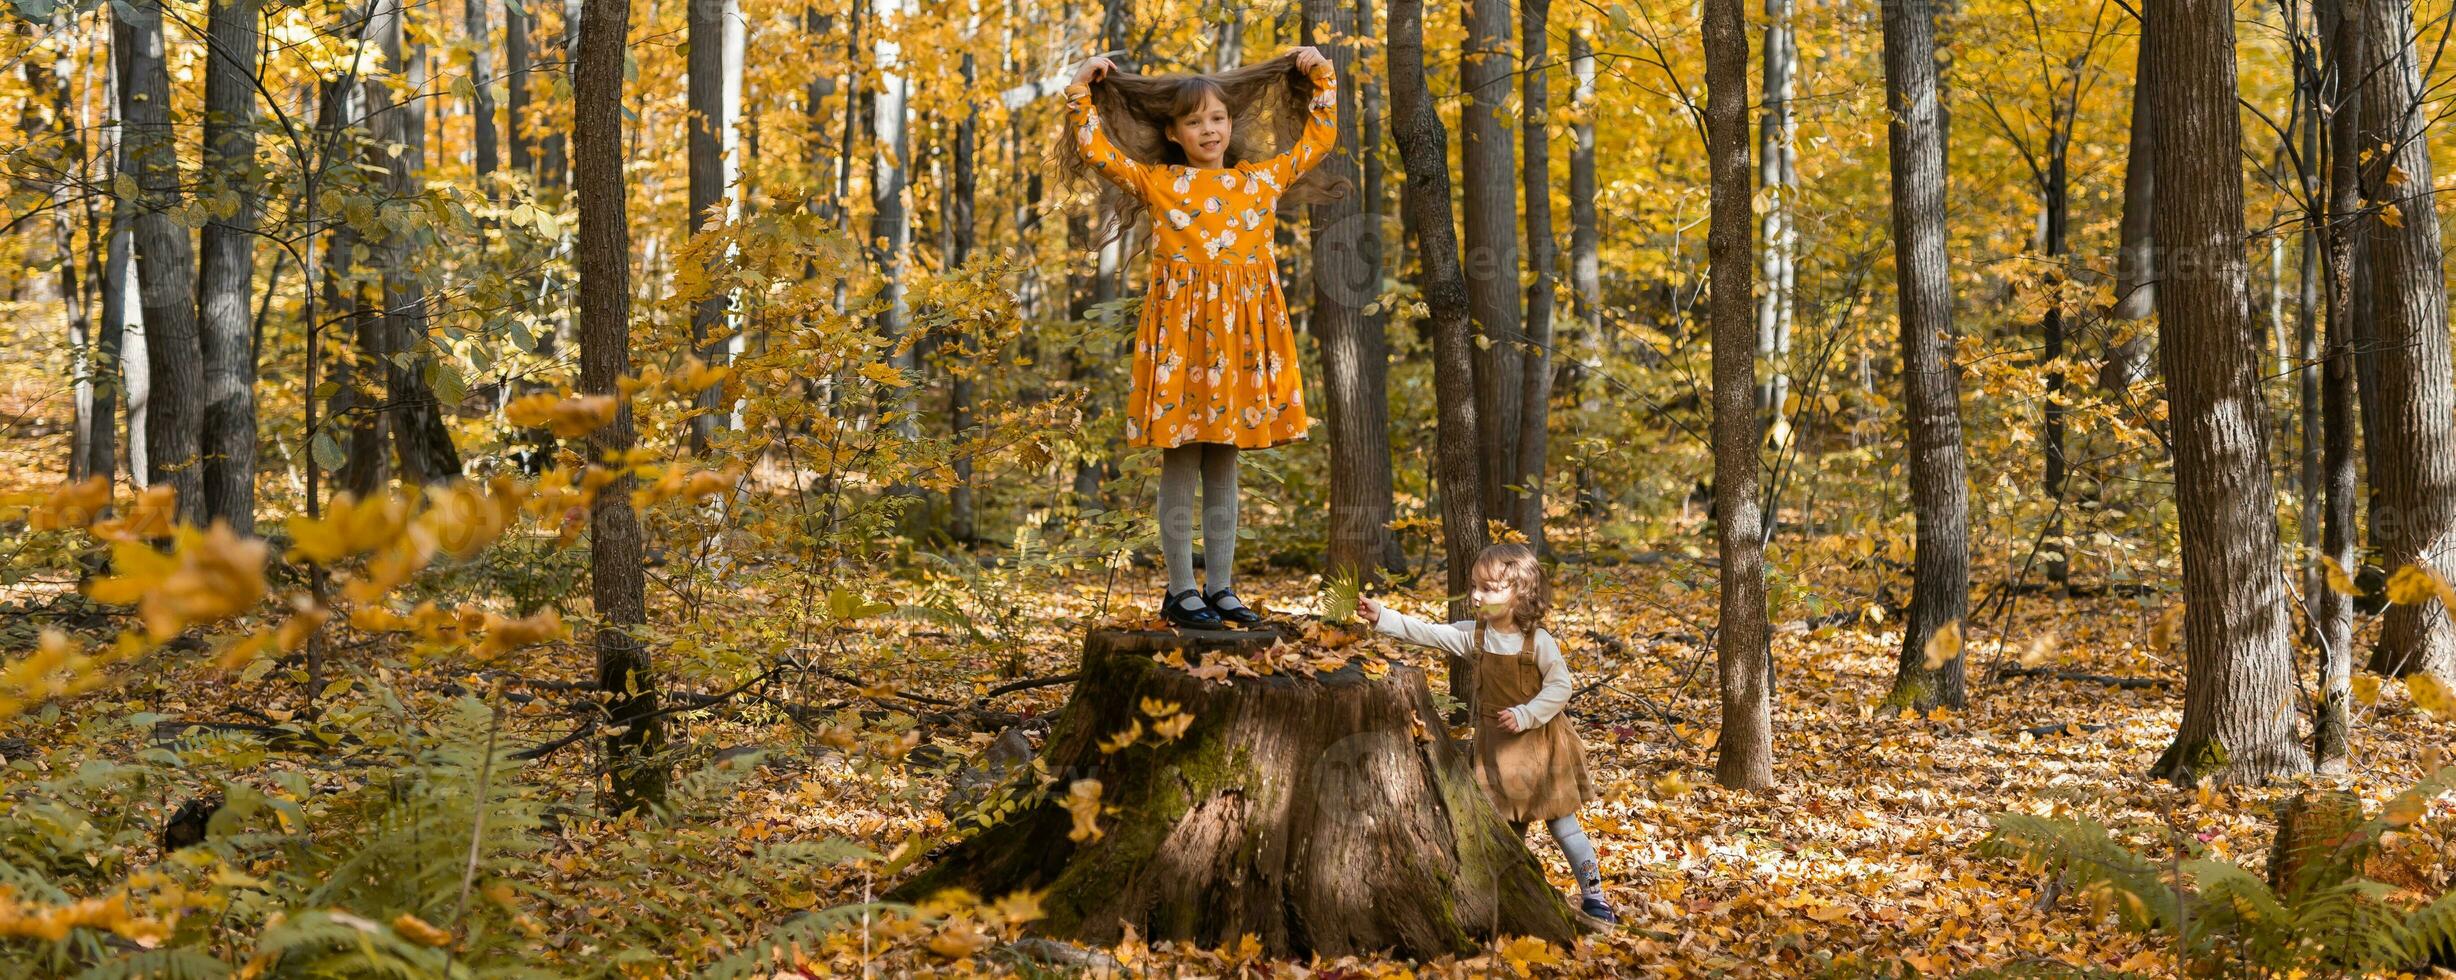 bandera pequeño niños muchachas con otoño naranja hojas en un parque Copiar espacio. estilo de vida, otoño temporada y niños concepto. foto